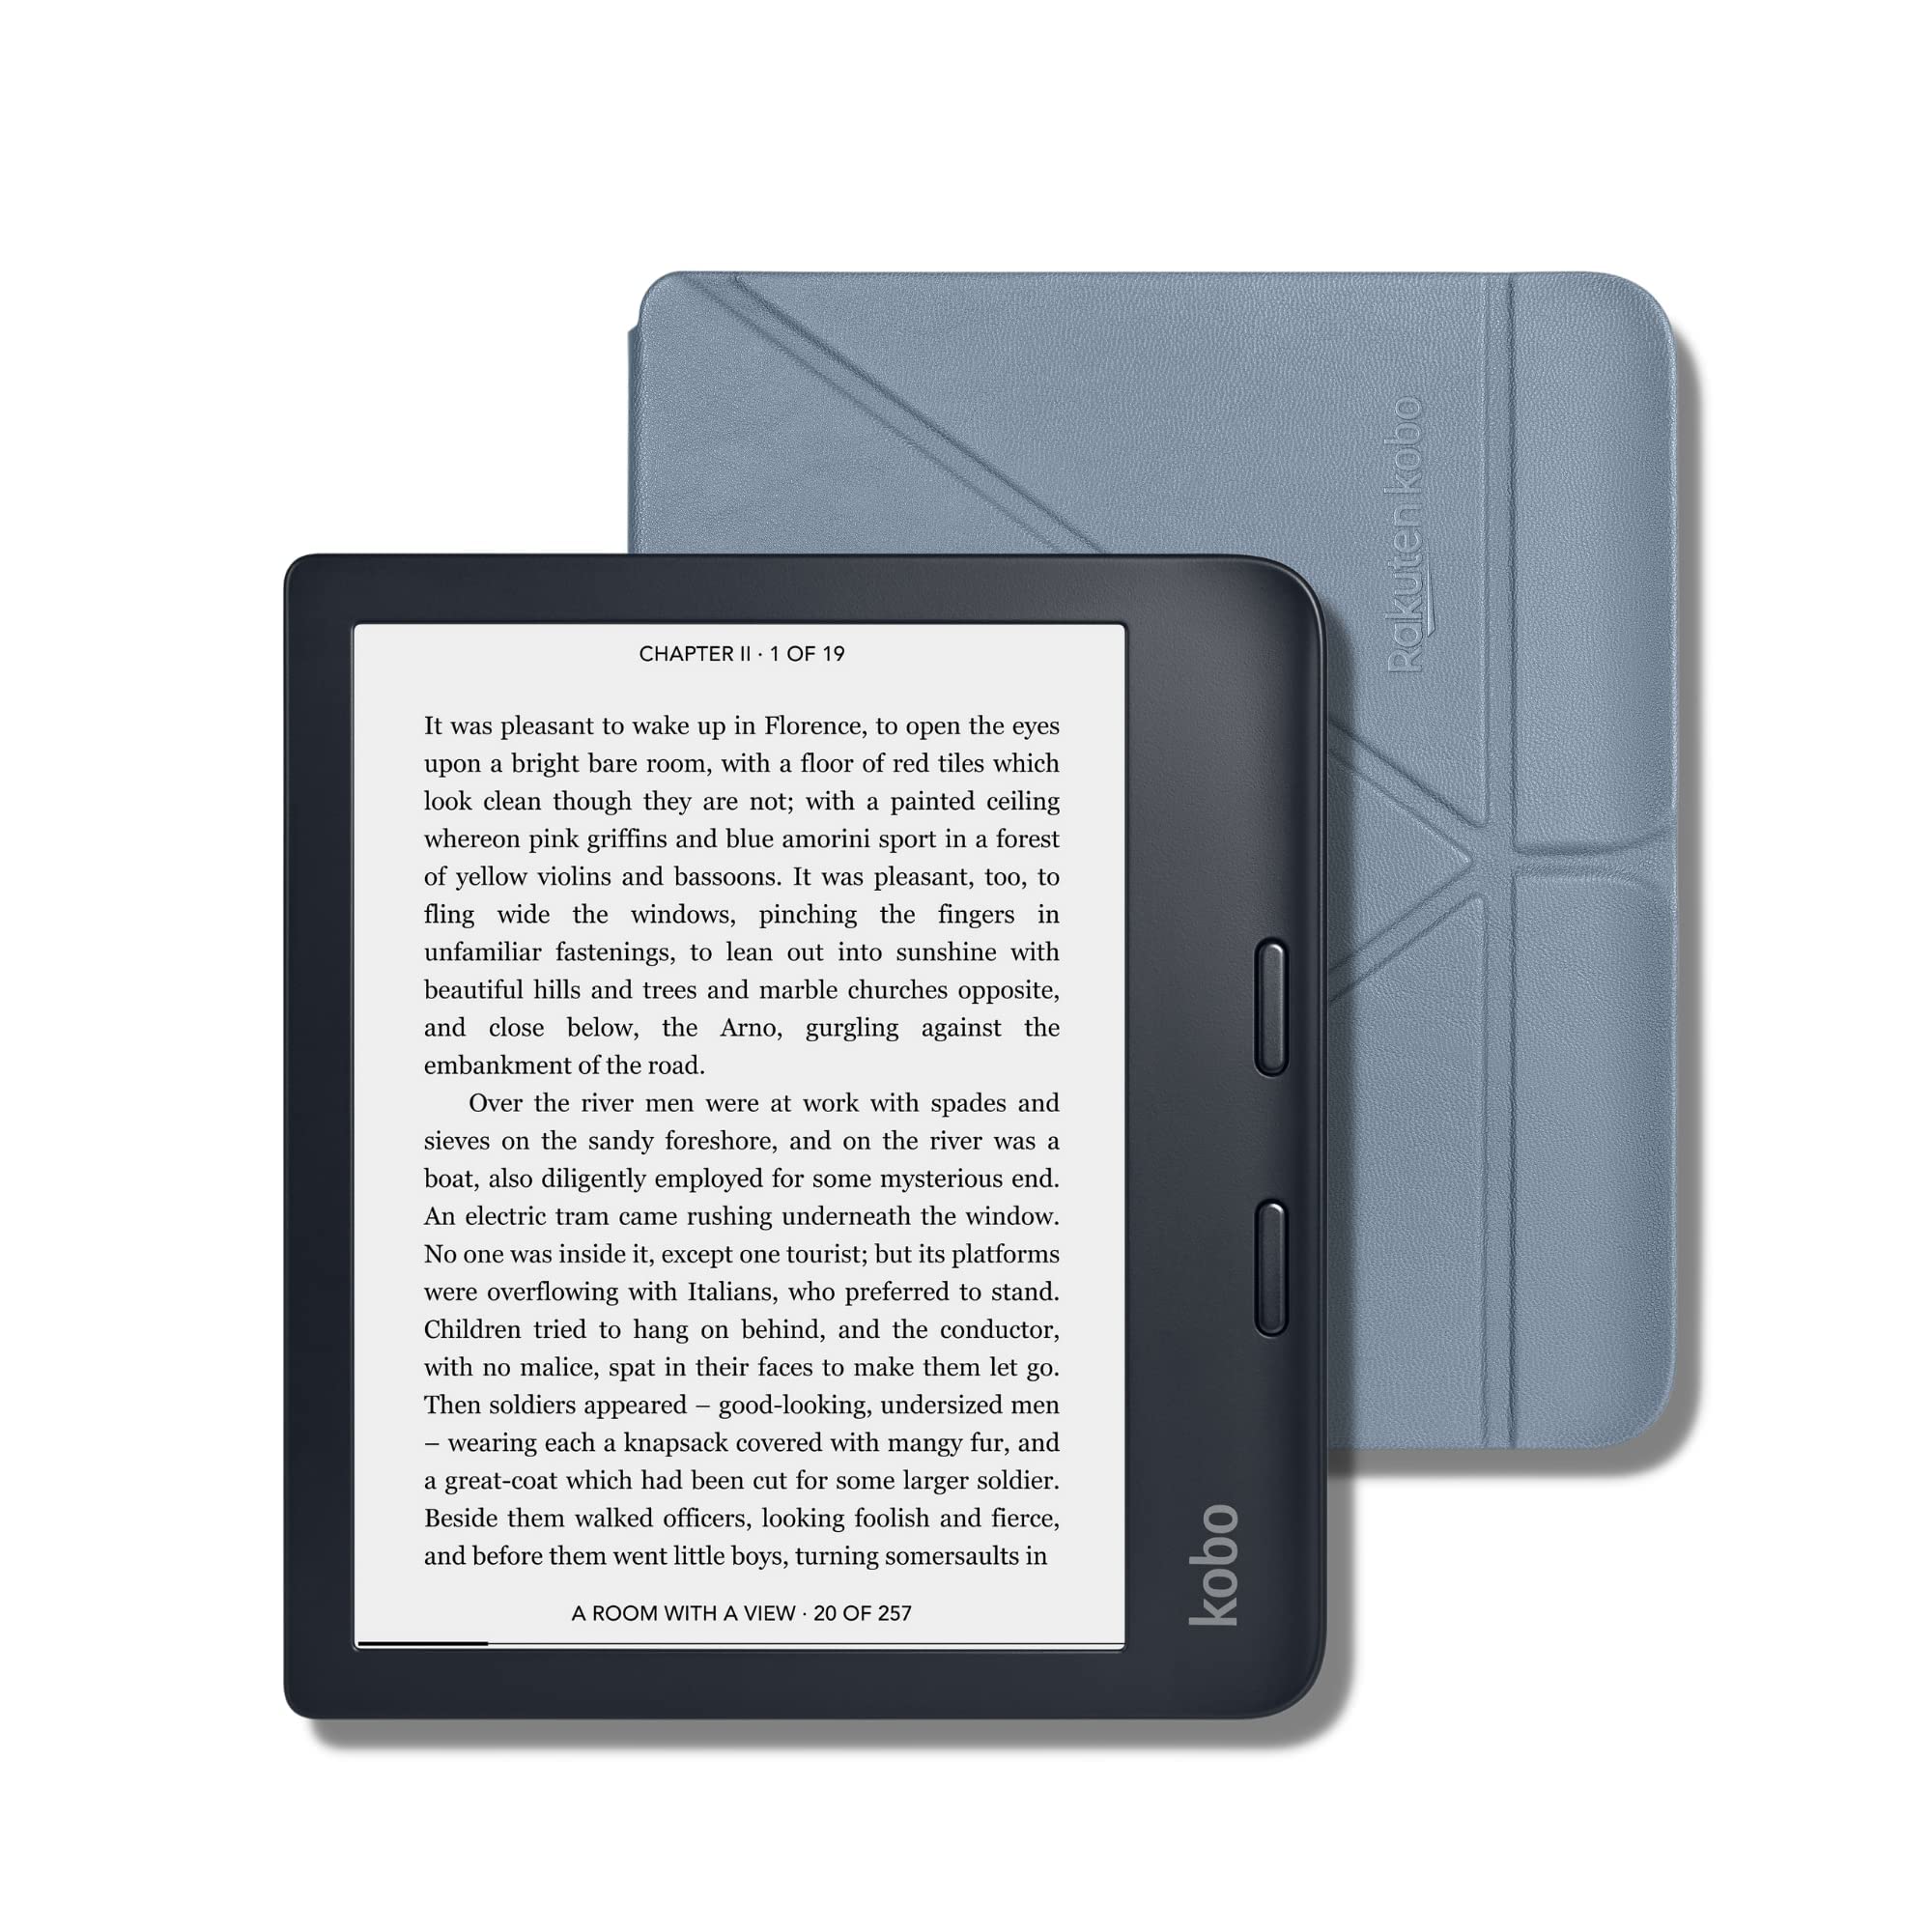 Kobo libra 2 7 digital ereader with touchscreen - black offer at Best Buy